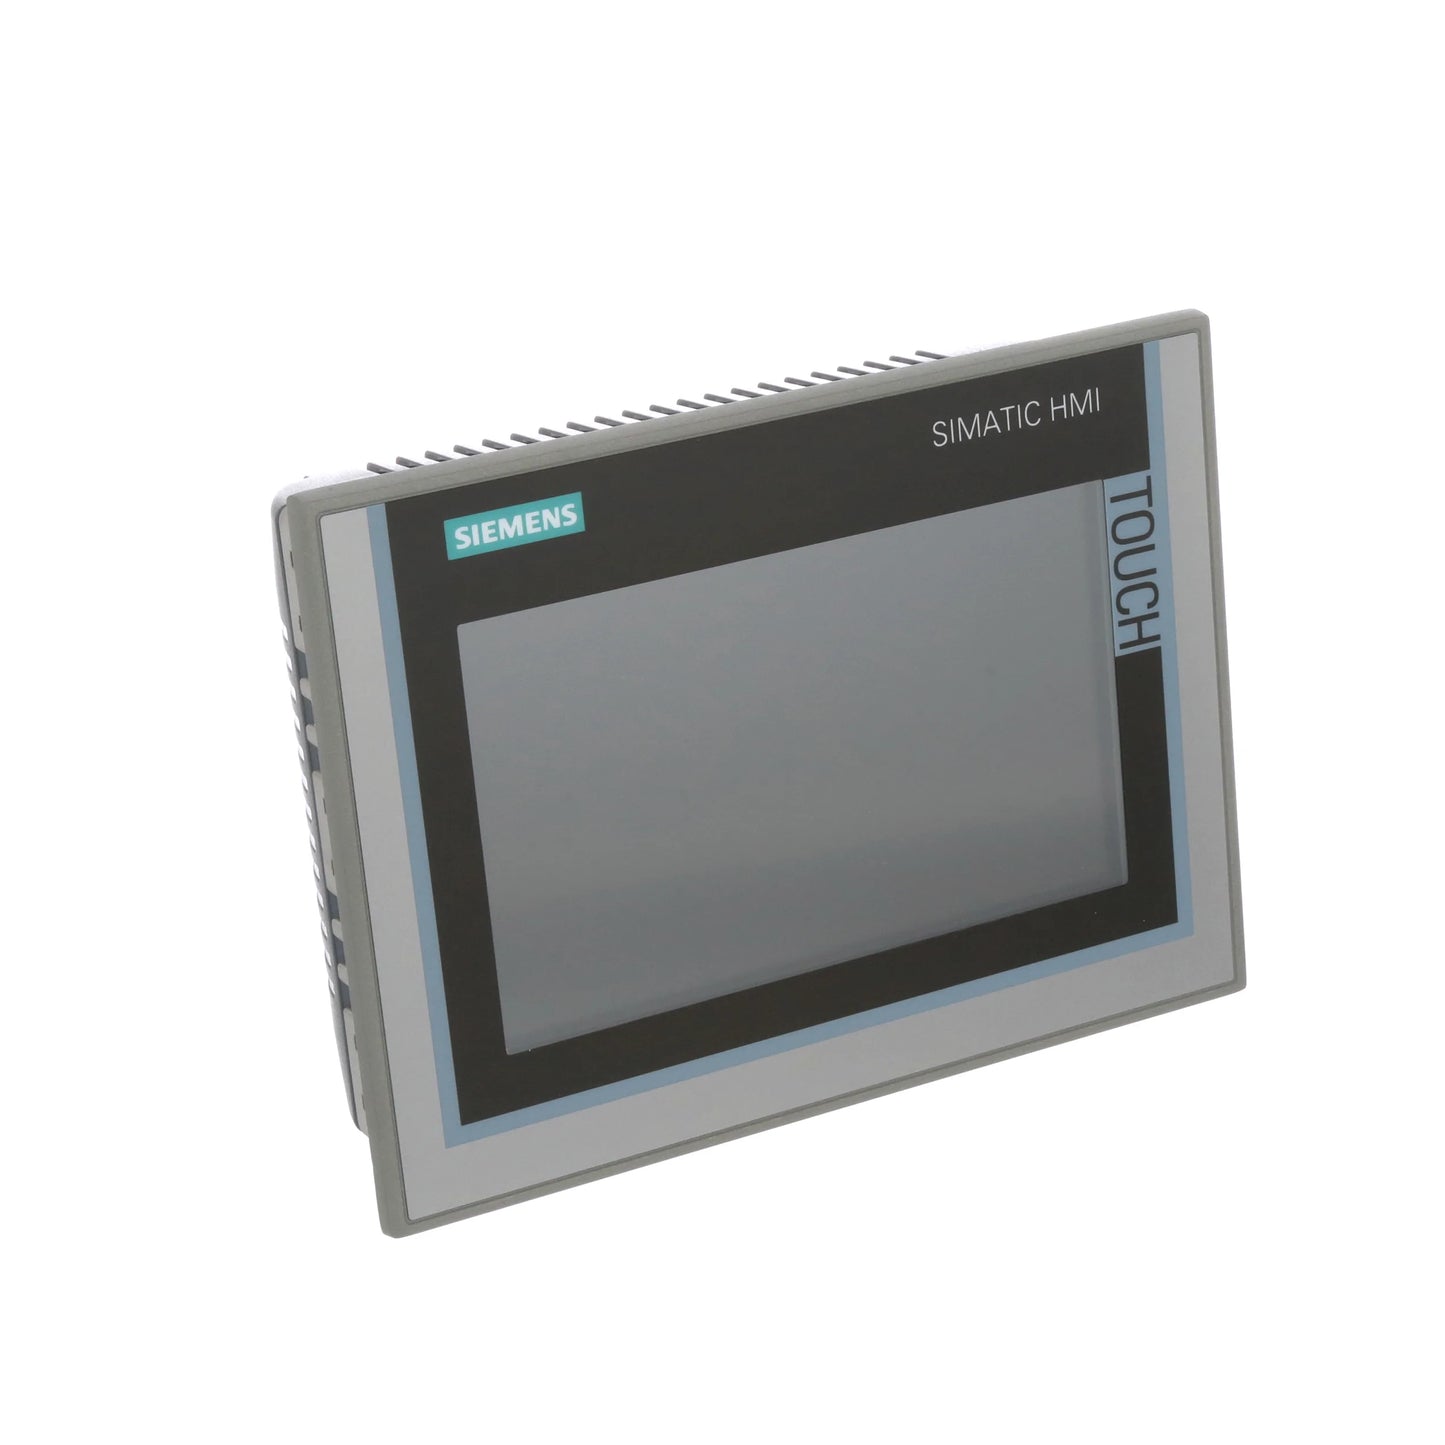 6AV2124-0GC01-0AX0 Siemens SIMATIC HMI TP700 Comfort, Comfort Panel, operação por toque, display TFT widescreen de 7", 16 milhões de cores, interface PROFINET, interface MPI/PROFIBUS DP, 12 MB